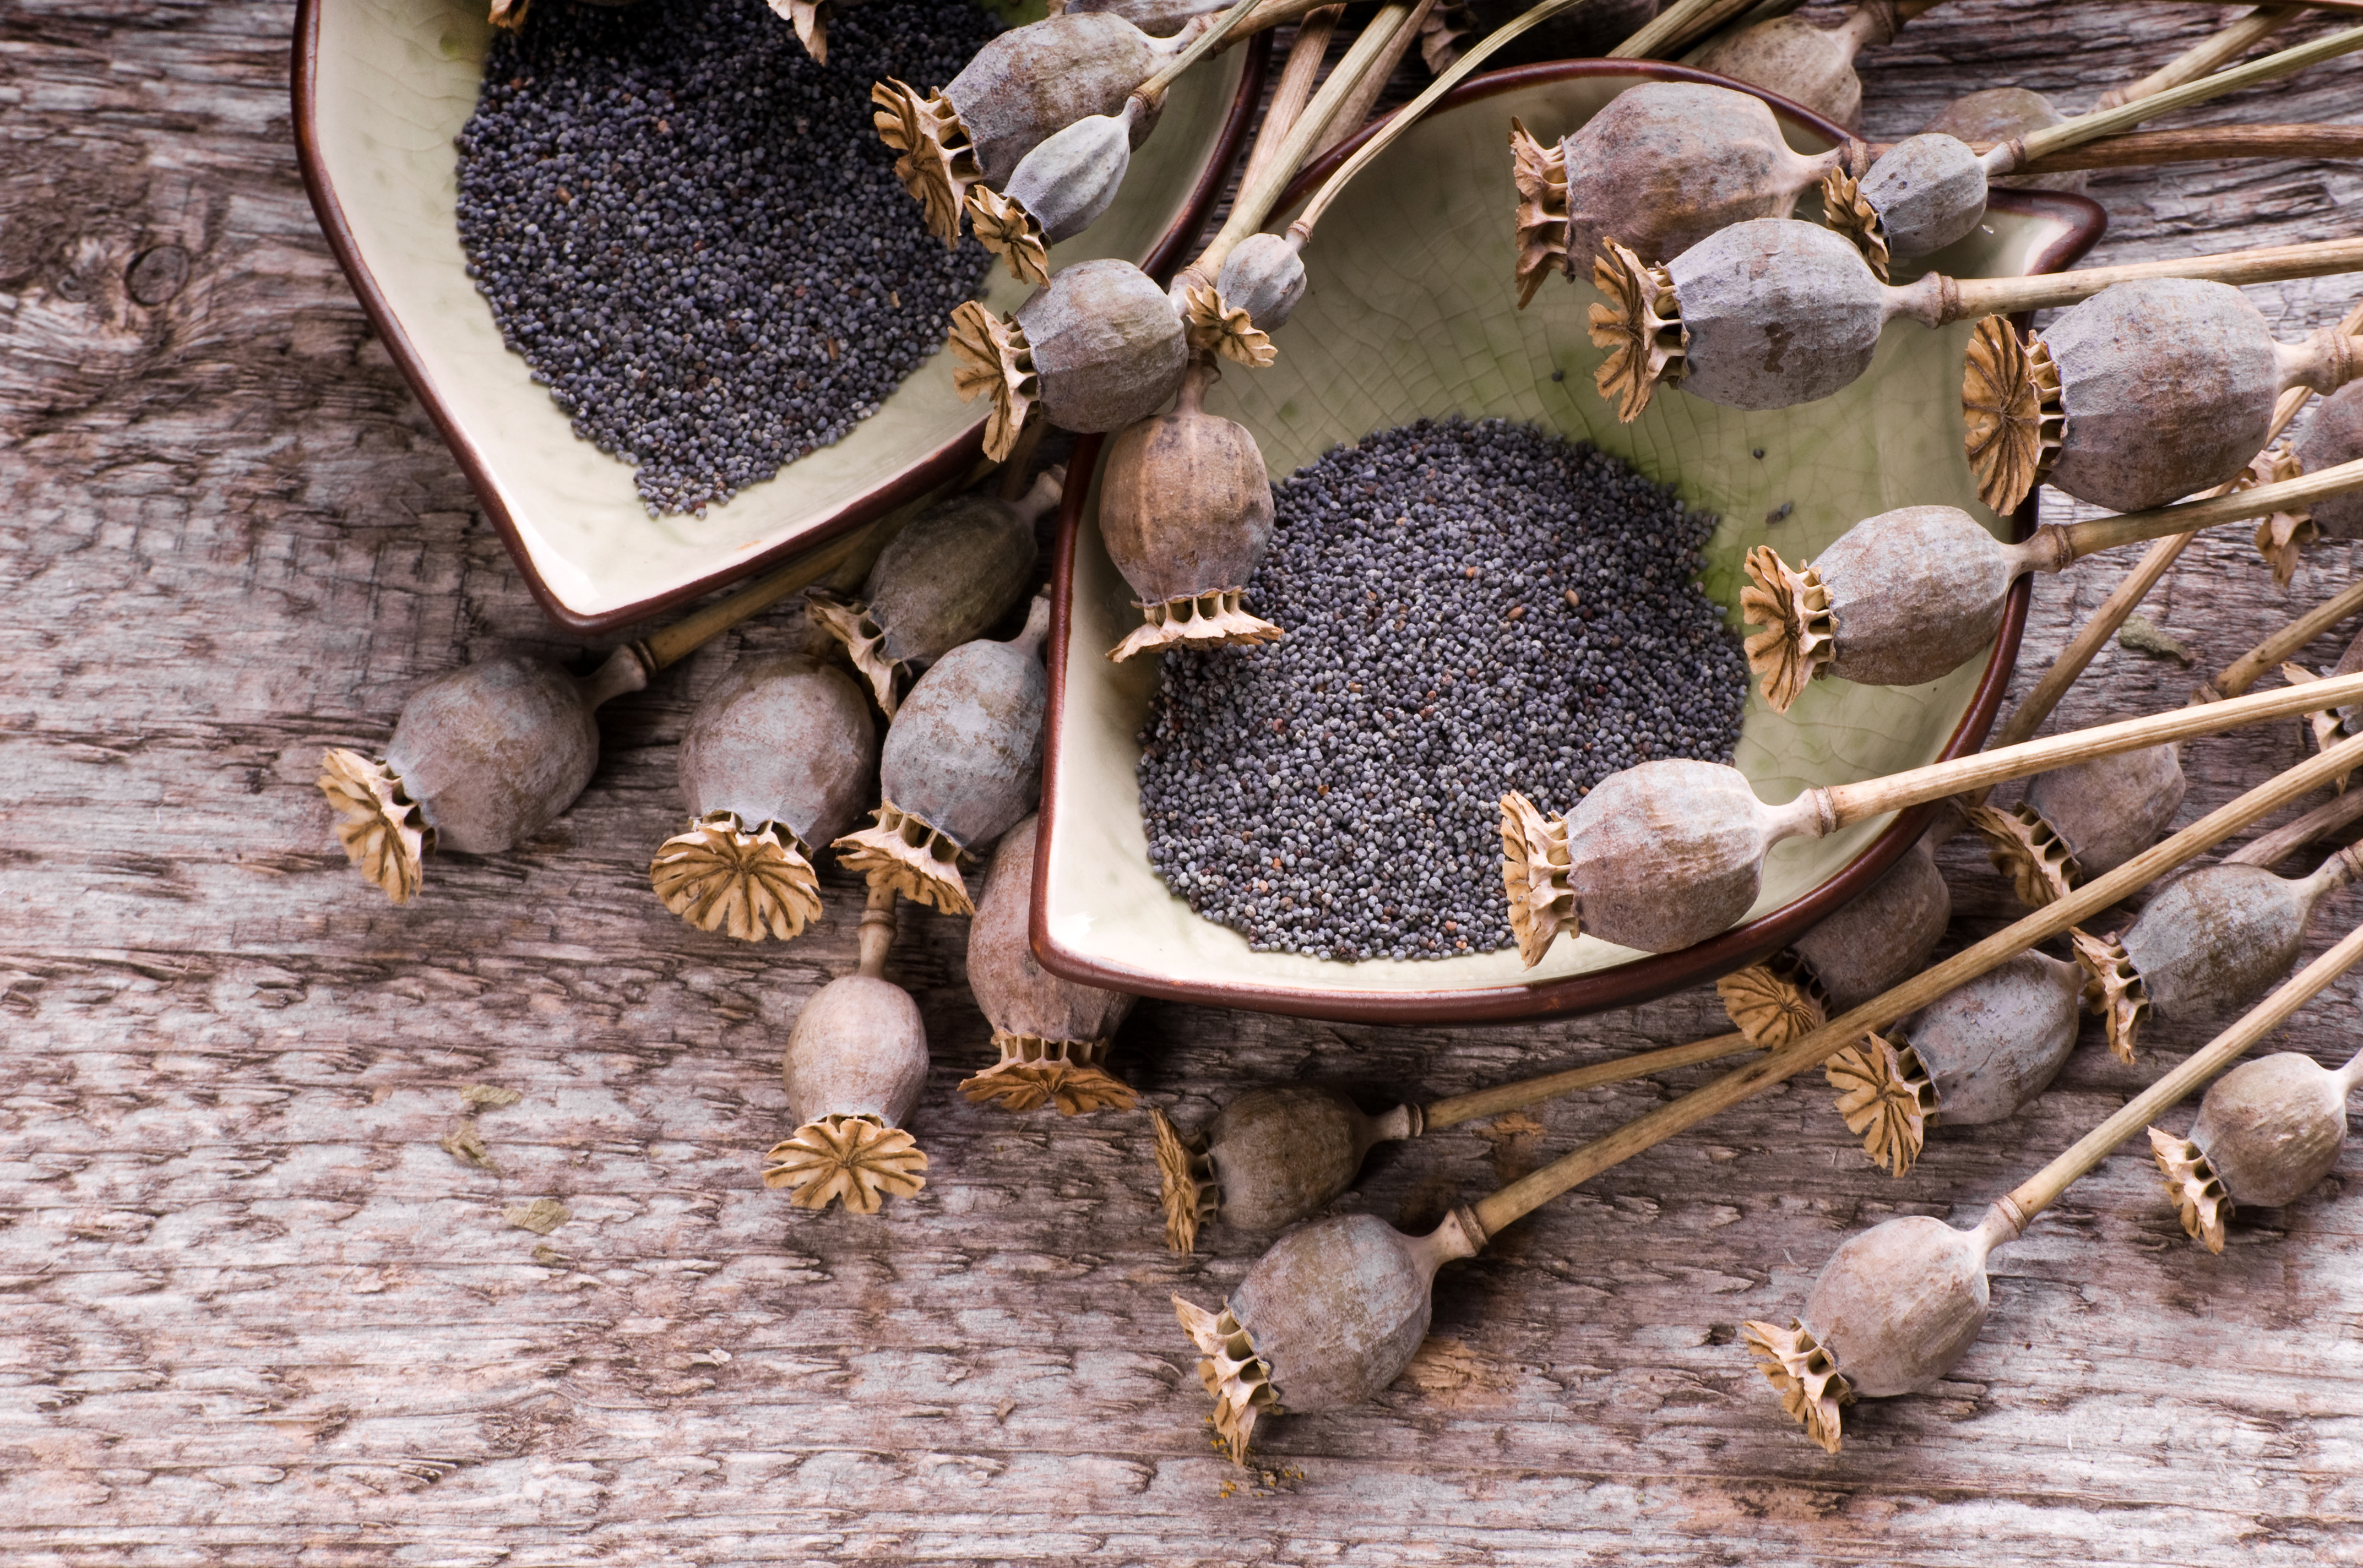 Alcaloïdes de l'opium dans les graines de pavot : mise à jour de l